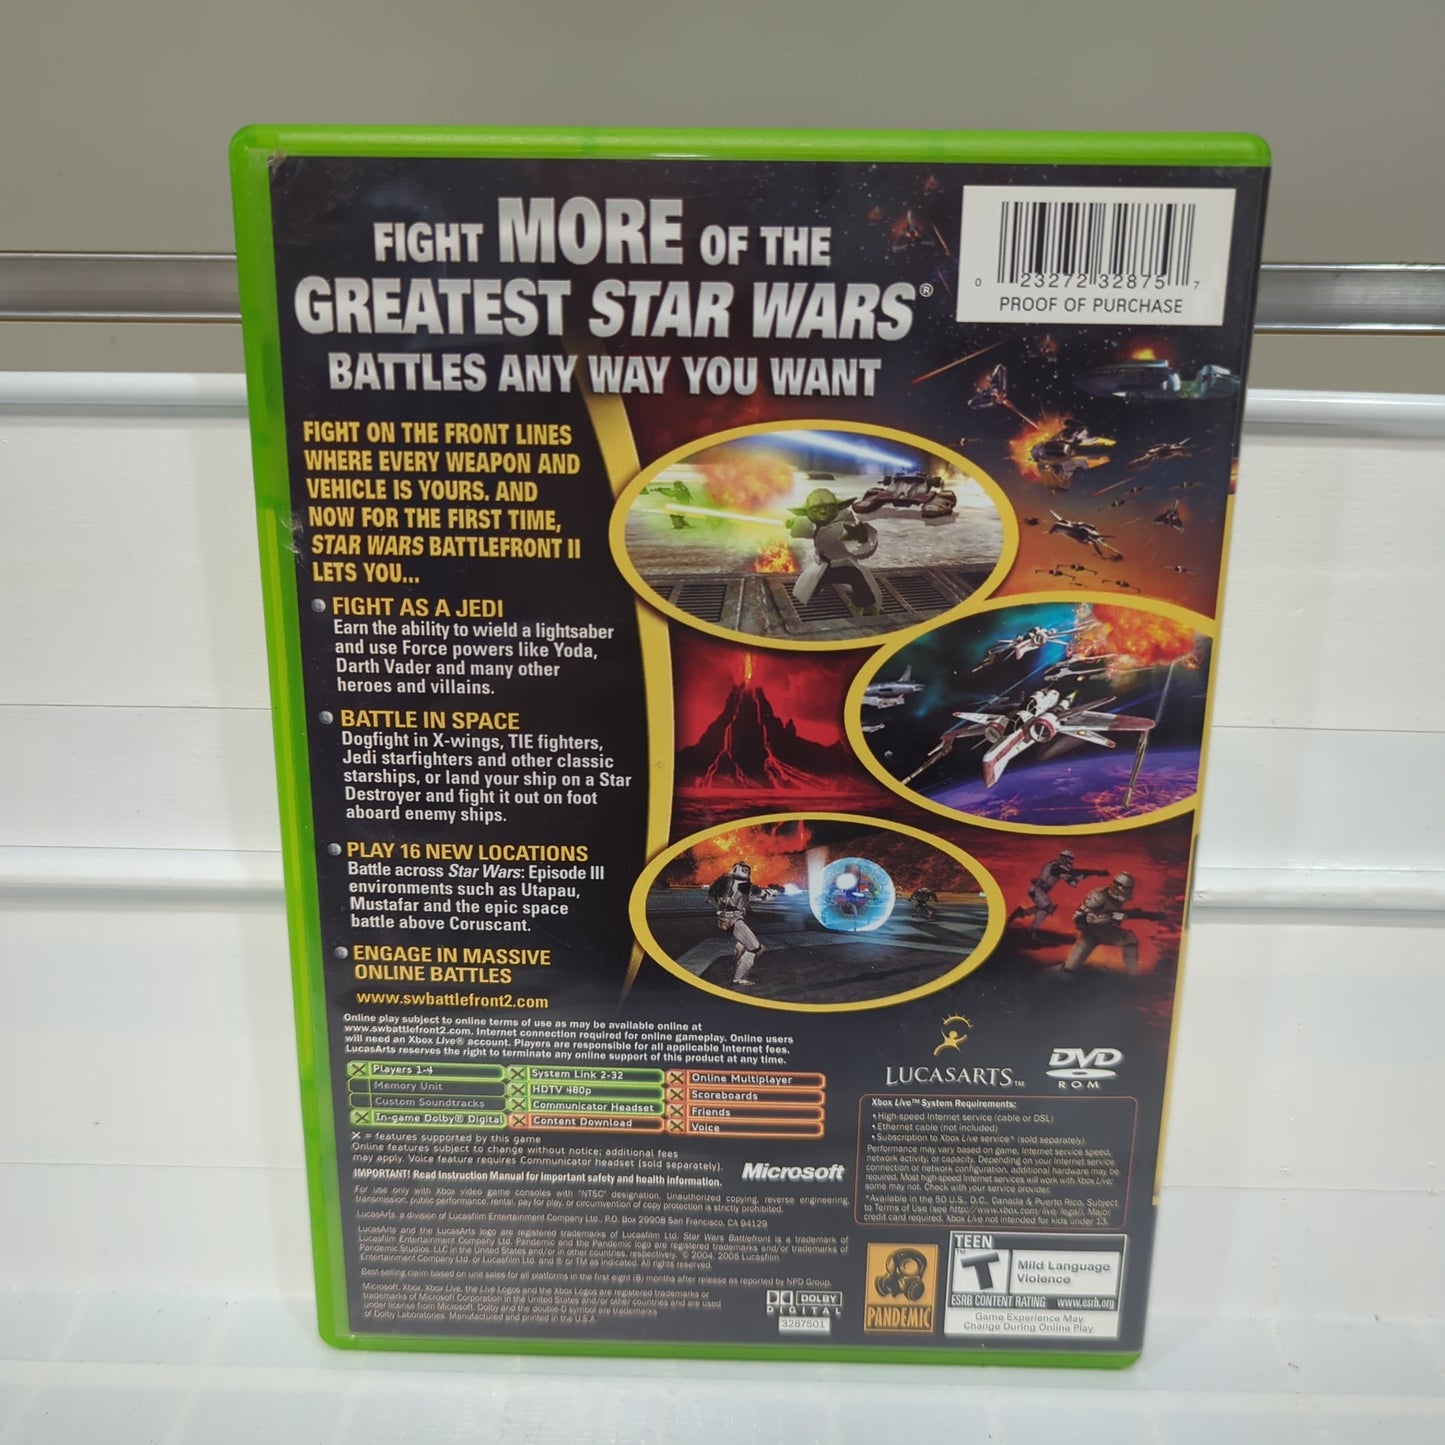 Star Wars Battlefront 2 - Xbox